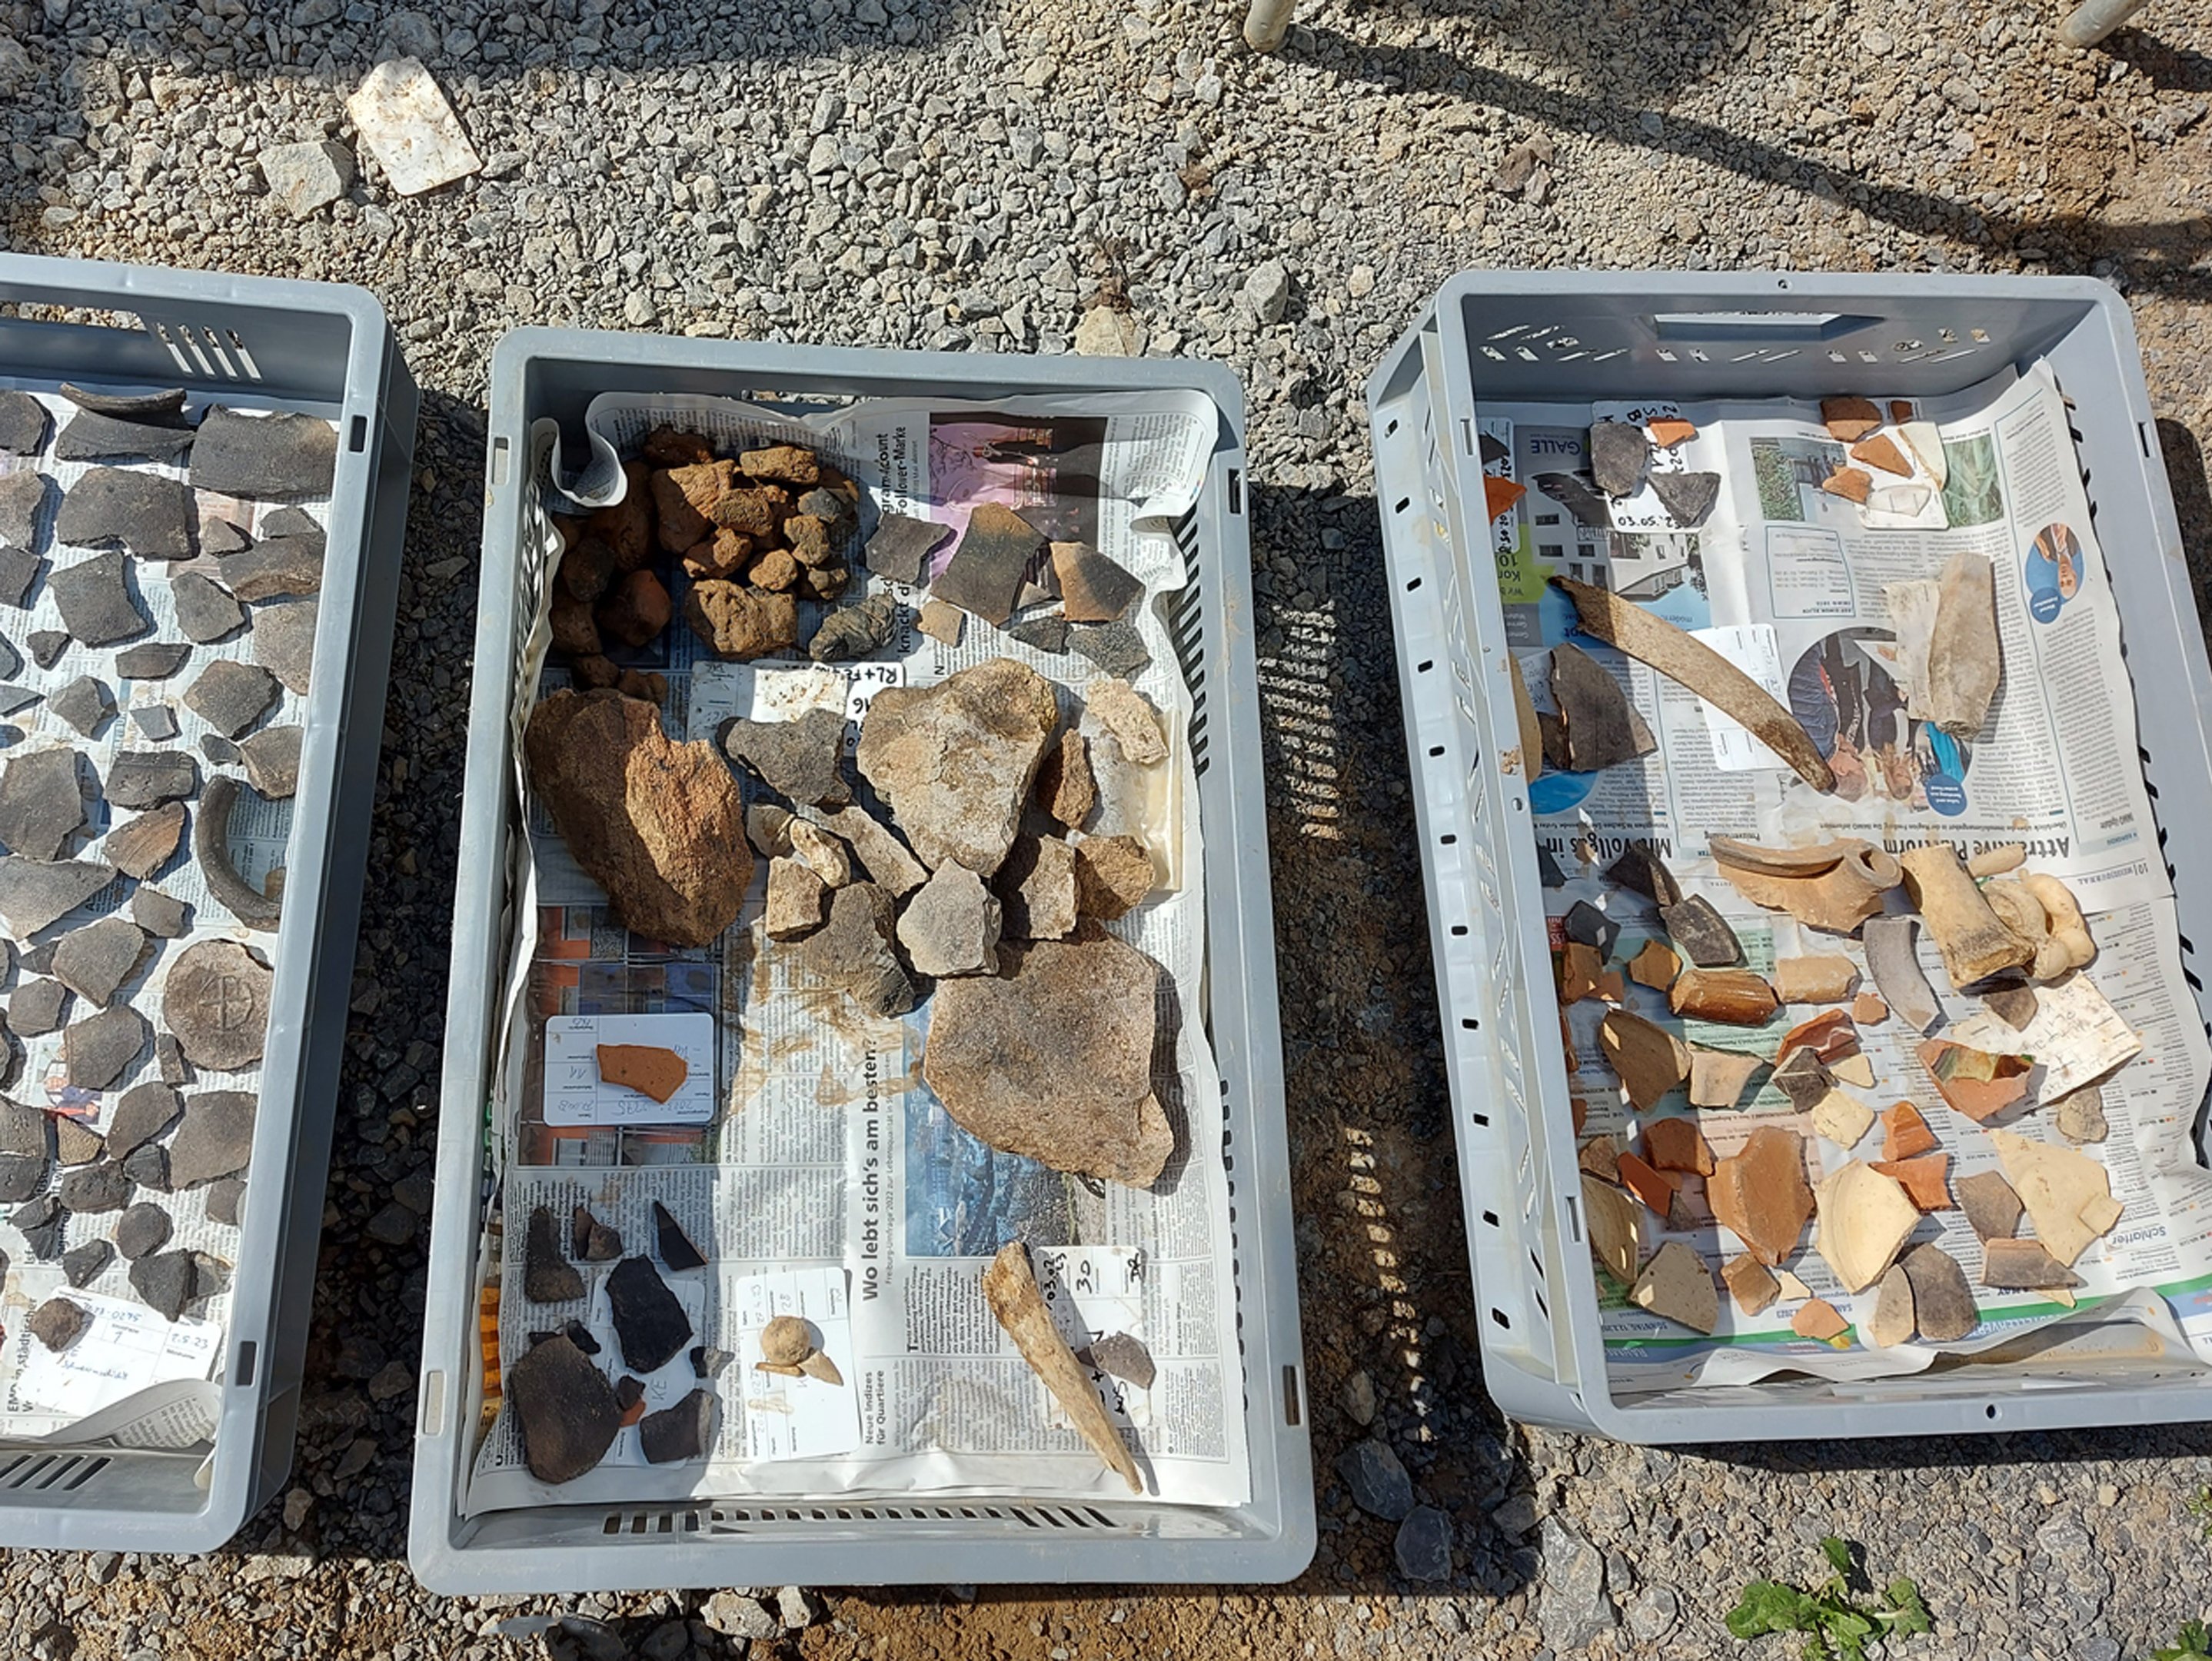 Ausgrabung: Fundstücke am Steppikreisel - Kisten mit Steinen, Knochen und Scherben